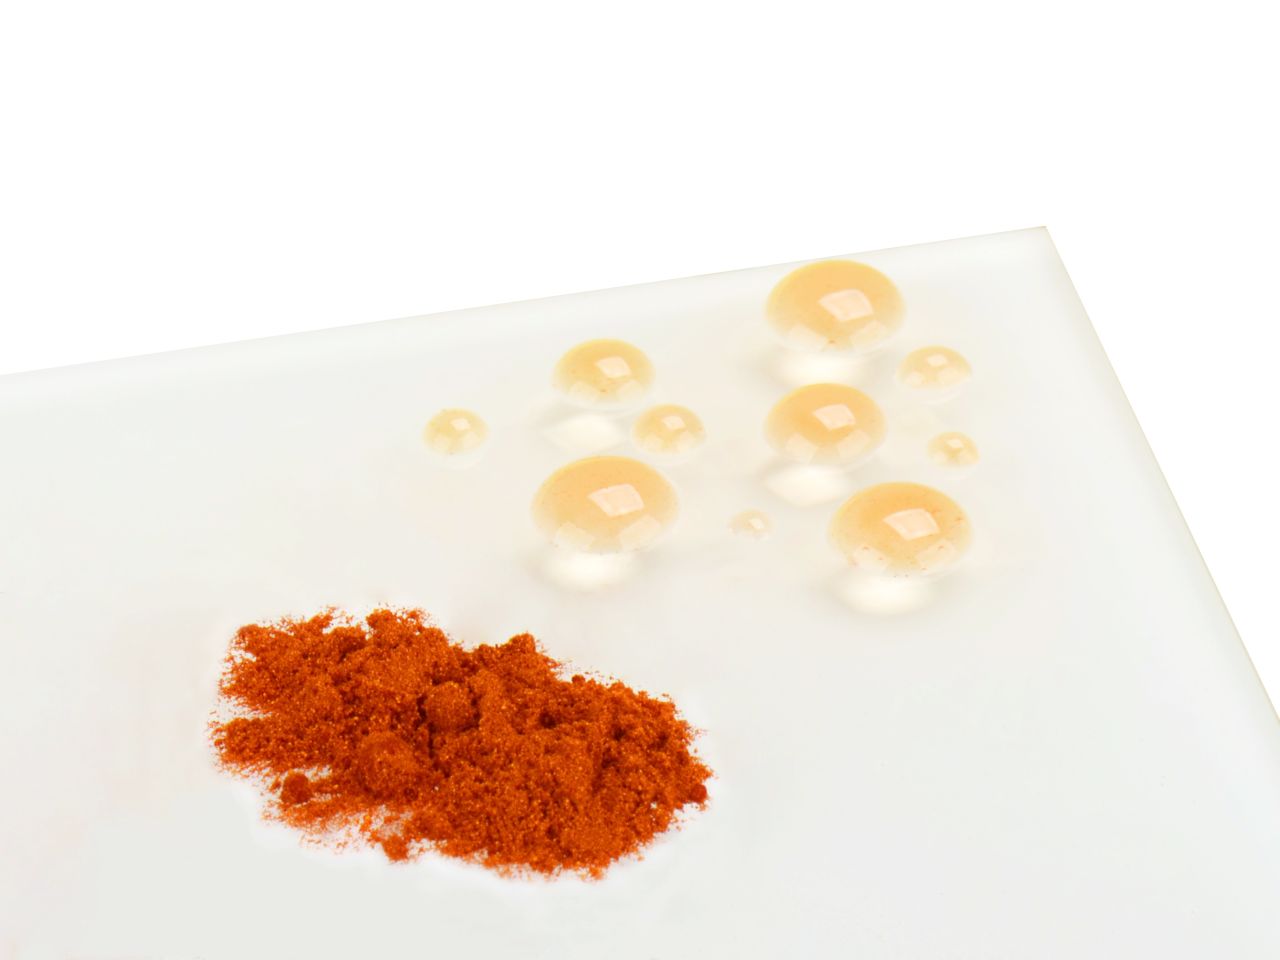 Lebensmittelfarbpulver zum Durchfärben, Apricot/Helle Haut, 20 g